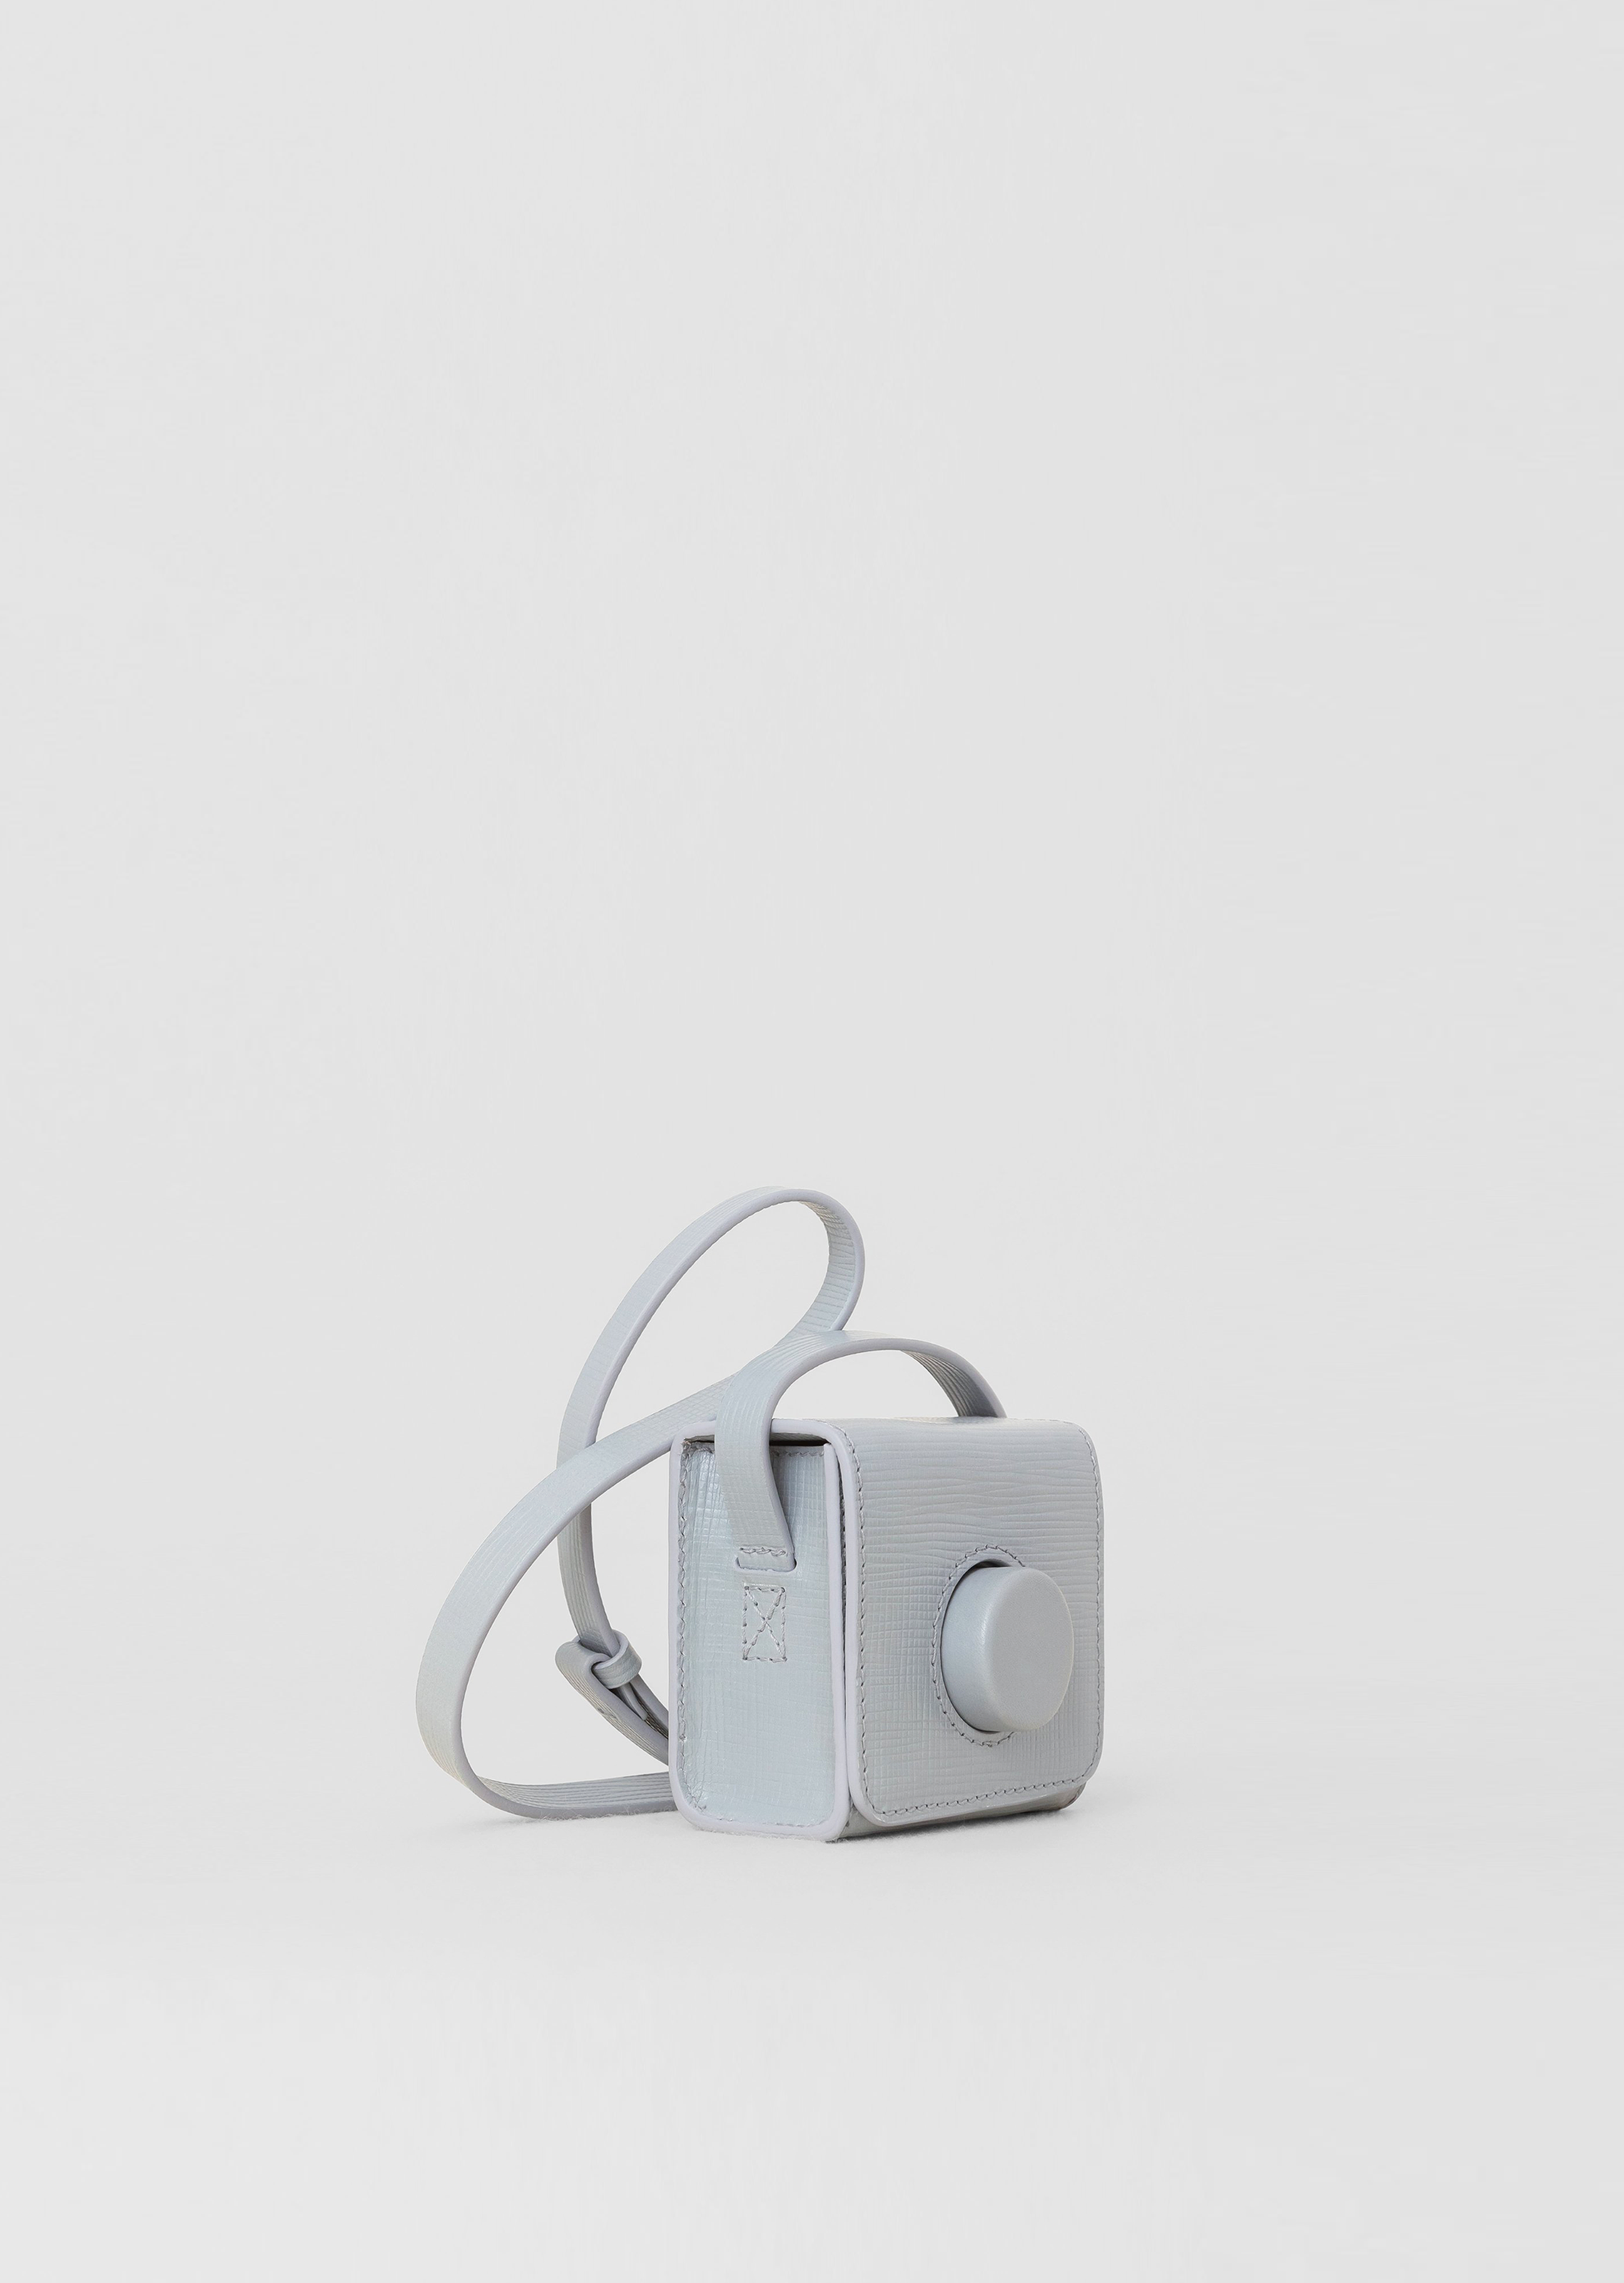 Mini Camera Bag – Azaria